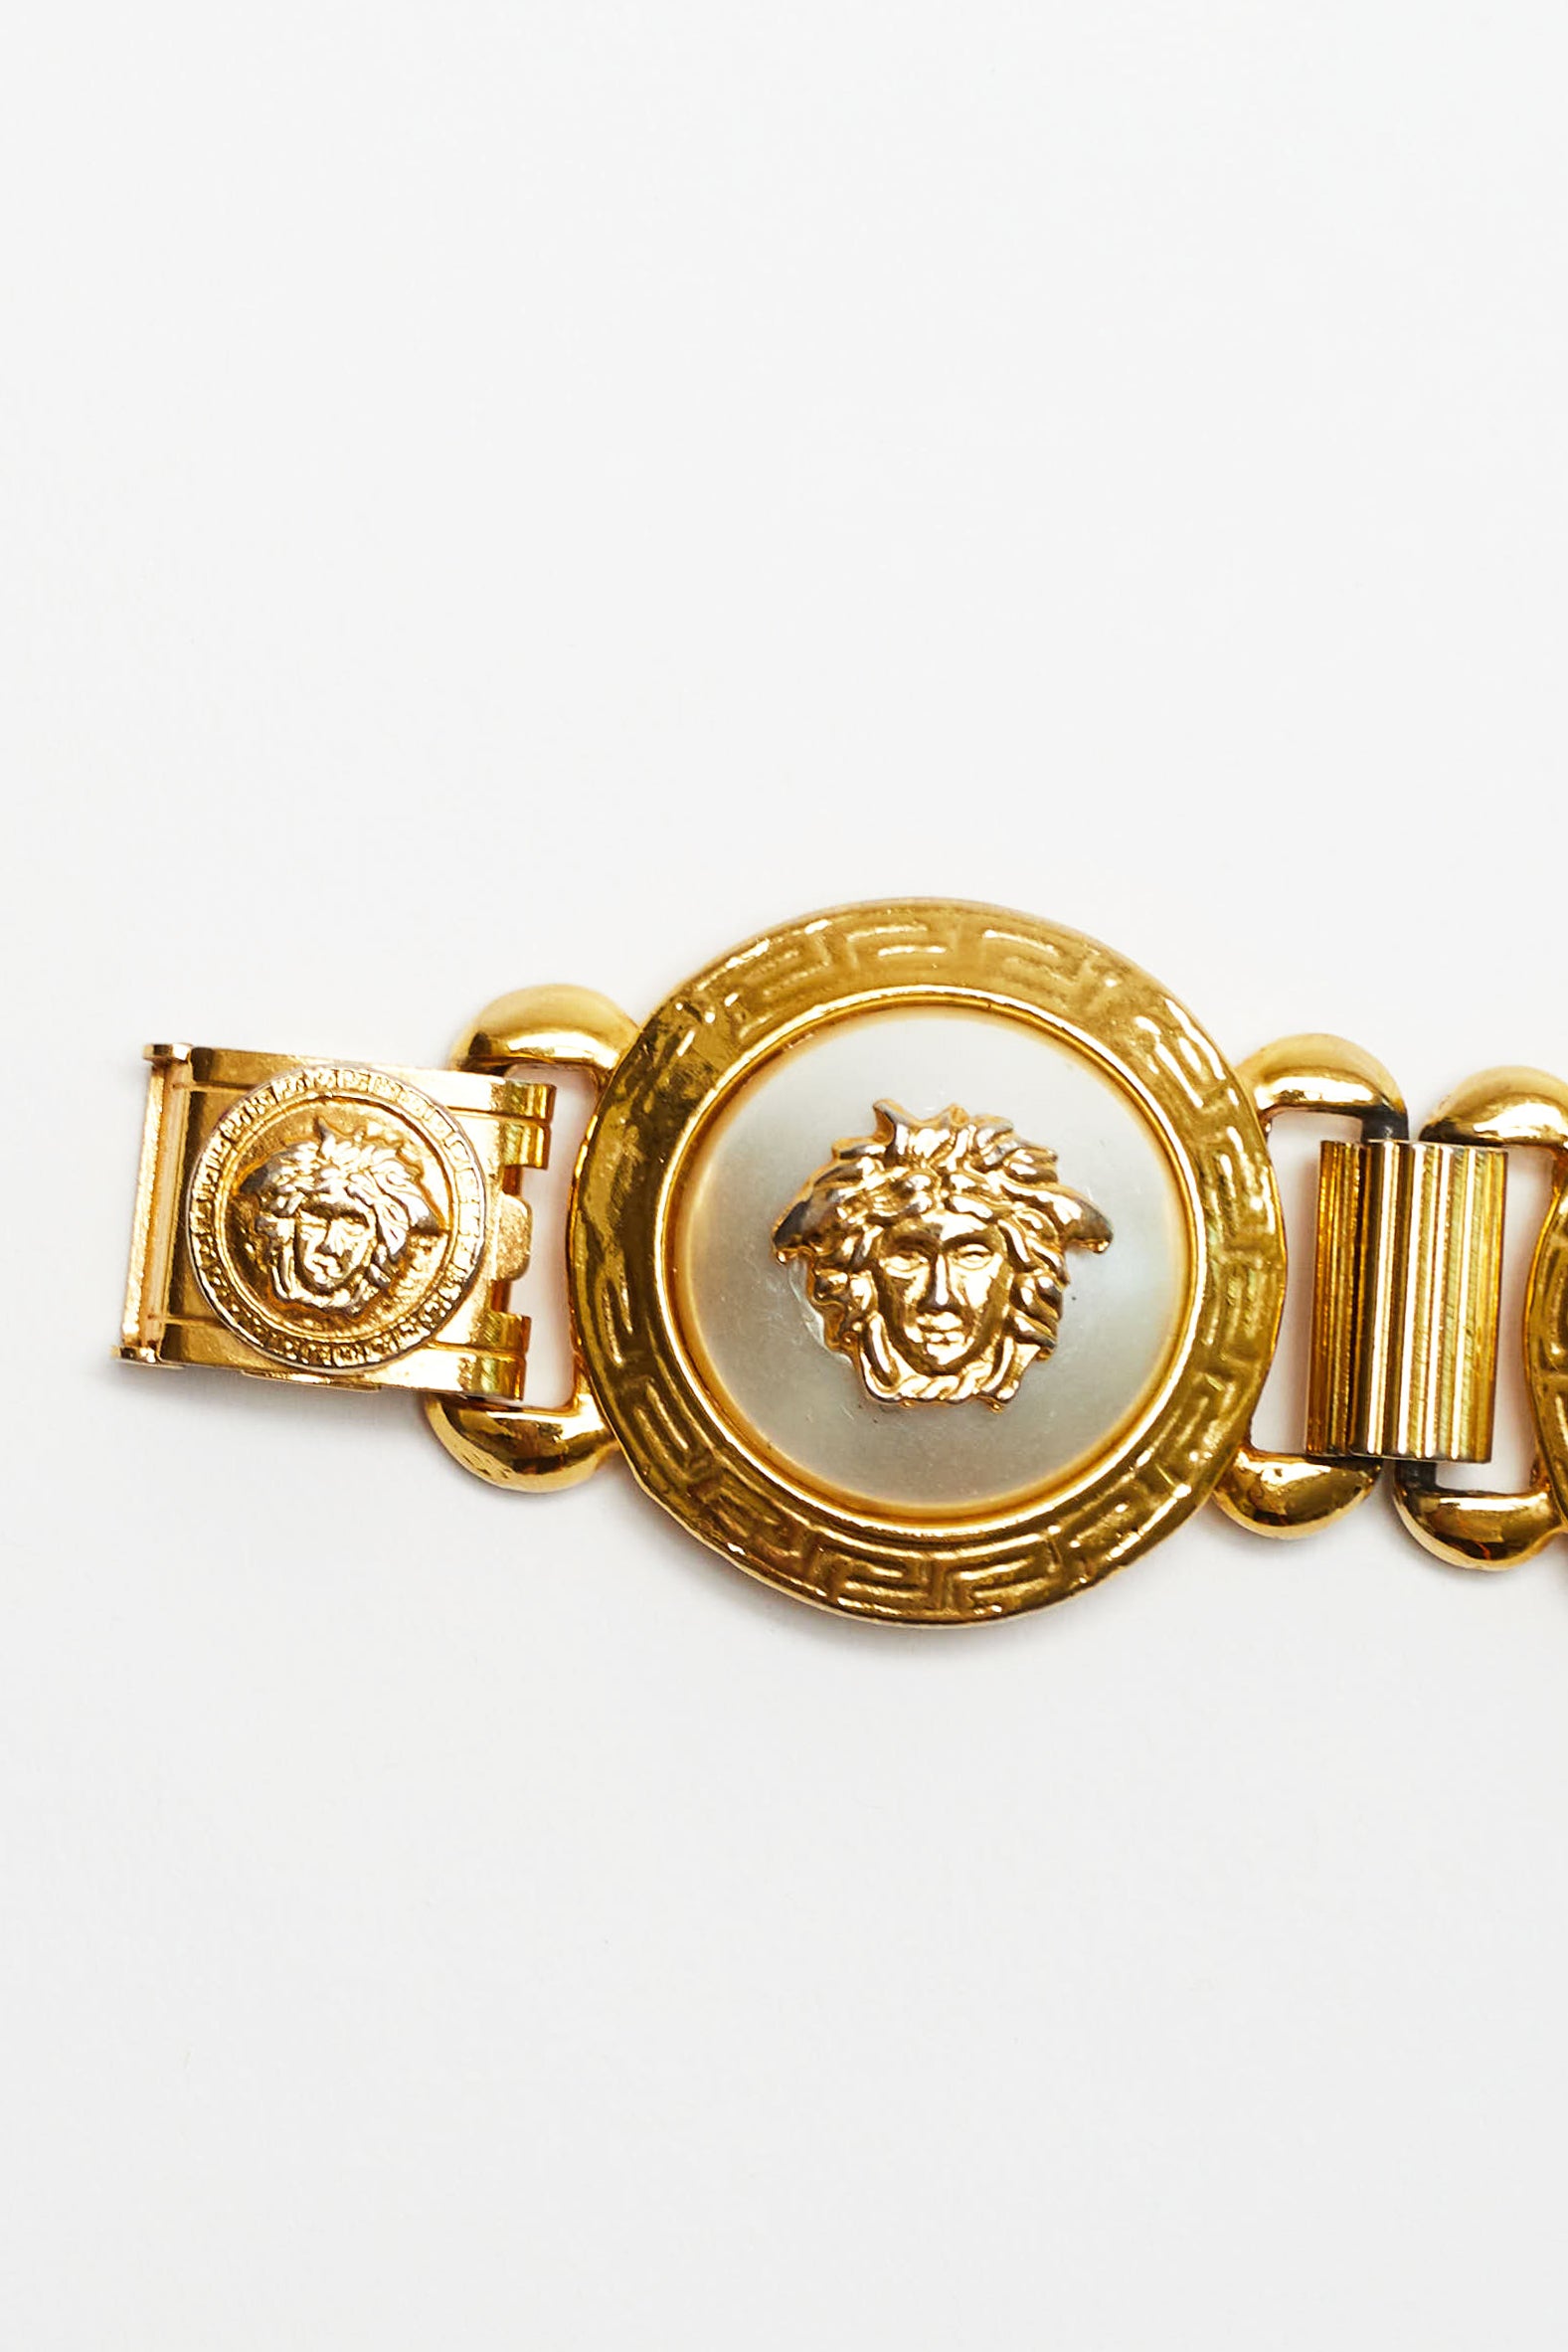 Gianni Versace <br> 90's gold Medusa head pearl medallion bracelet